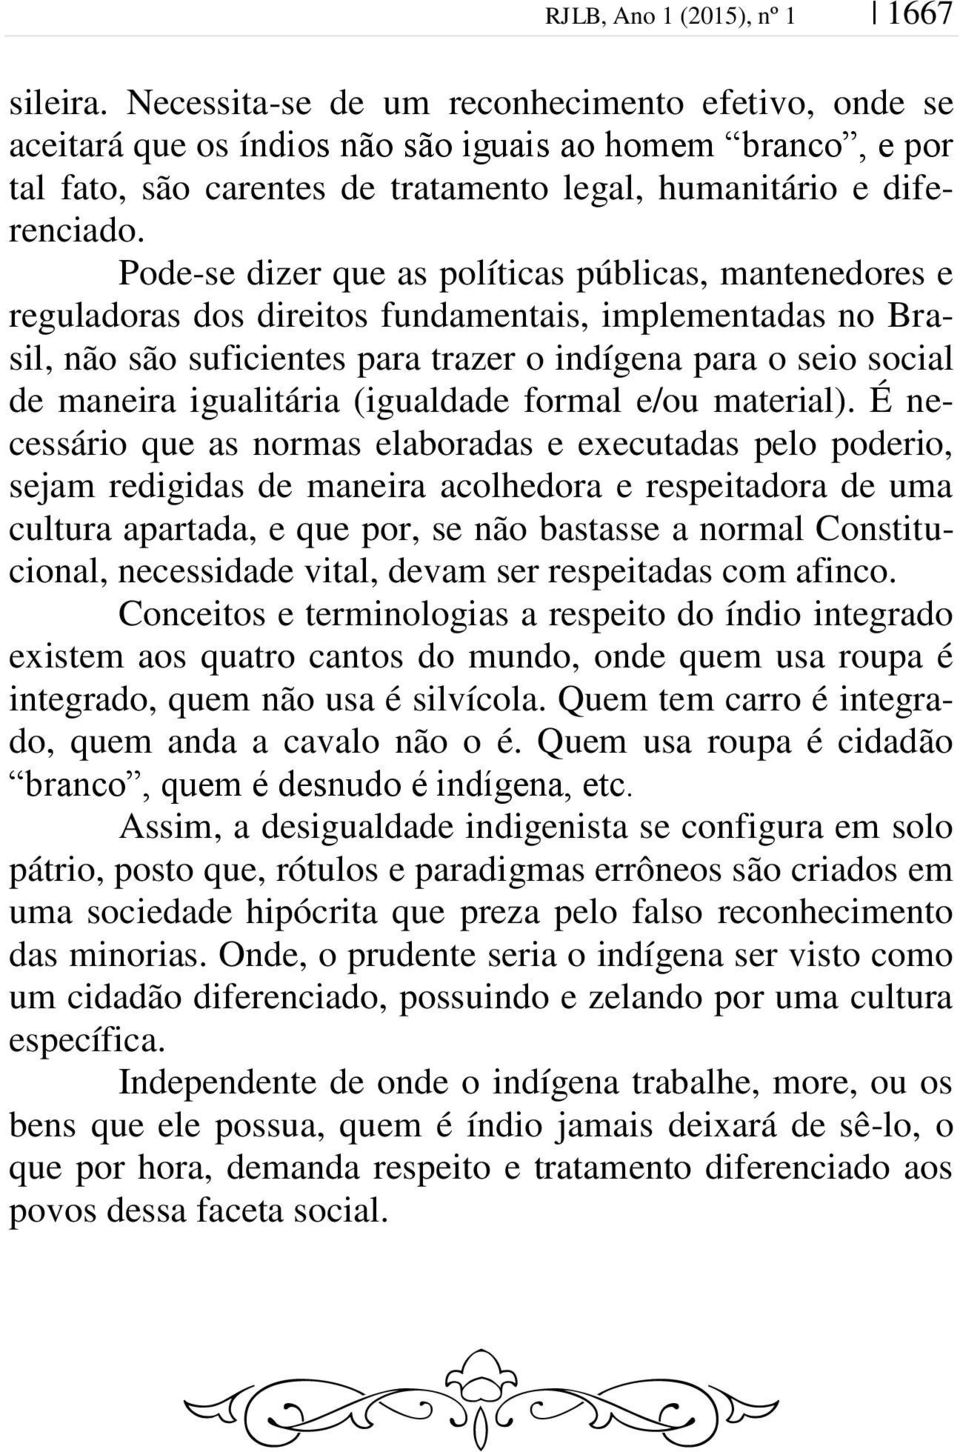 Pode-se dizer que as políticas públicas, mantenedores e reguladoras dos direitos fundamentais, implementadas no Brasil, não são suficientes para trazer o indígena para o seio social de maneira